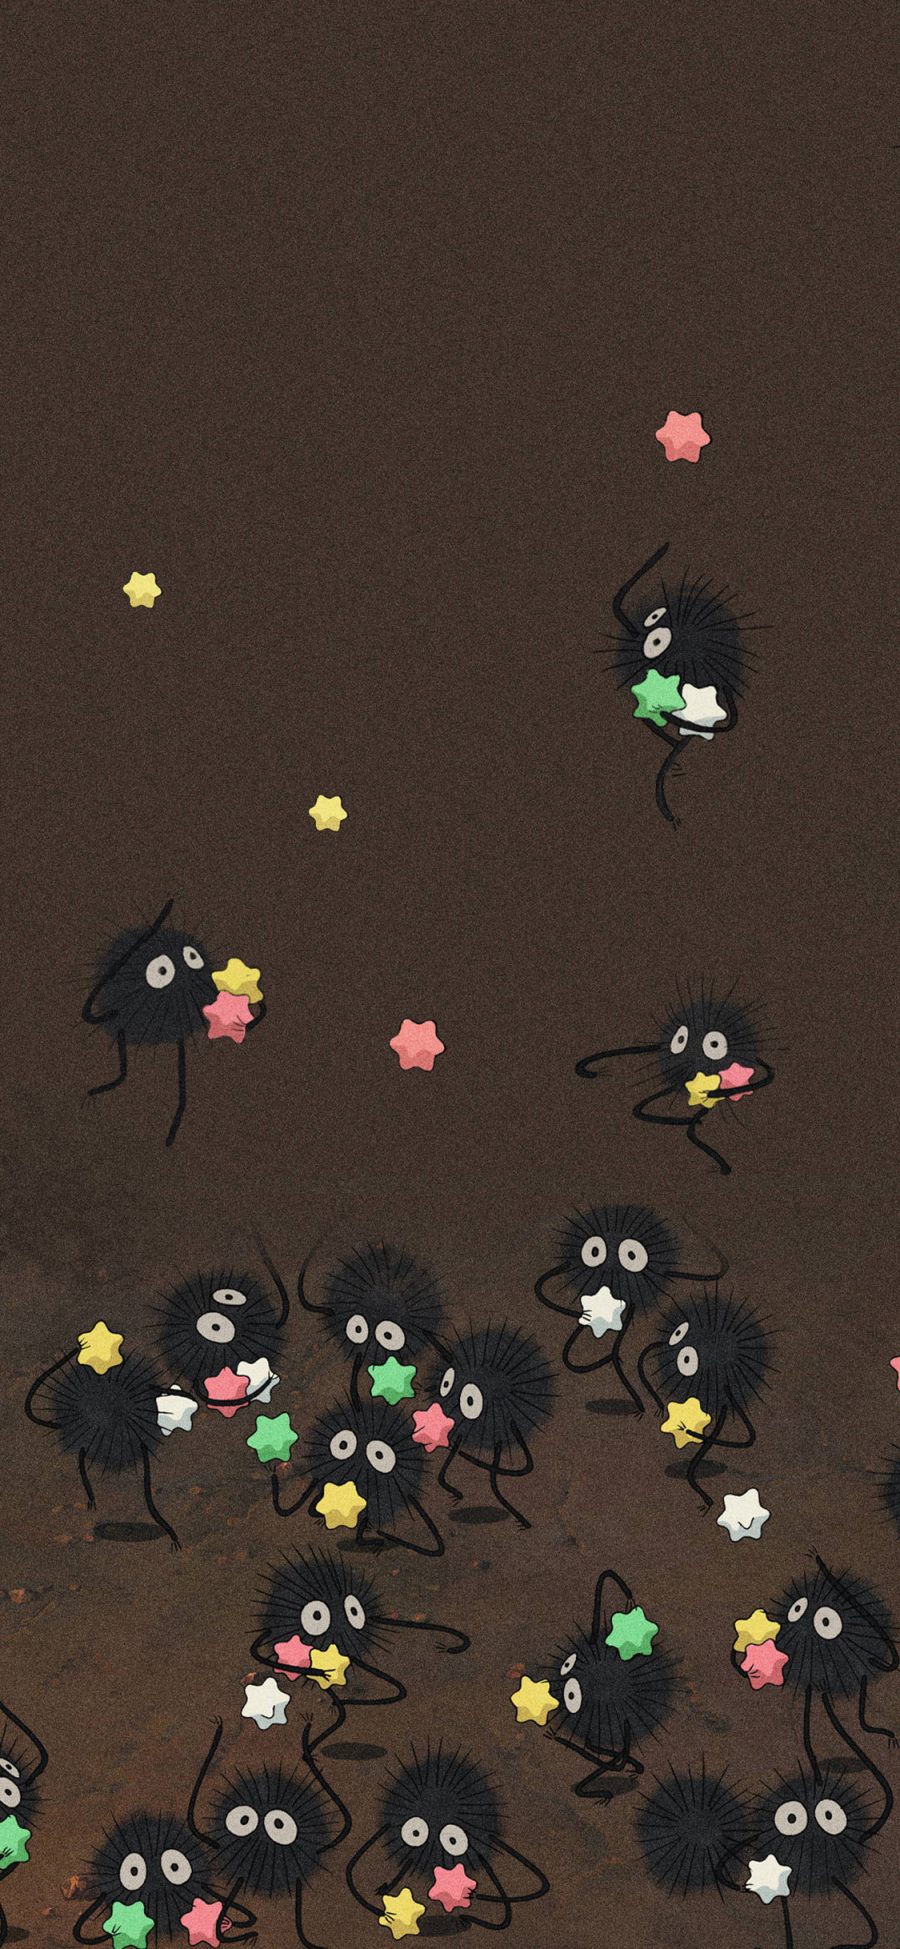 [2436×1125]宫崎骏 日漫 千与千寻 煤炭球 苹果手机动漫壁纸图片